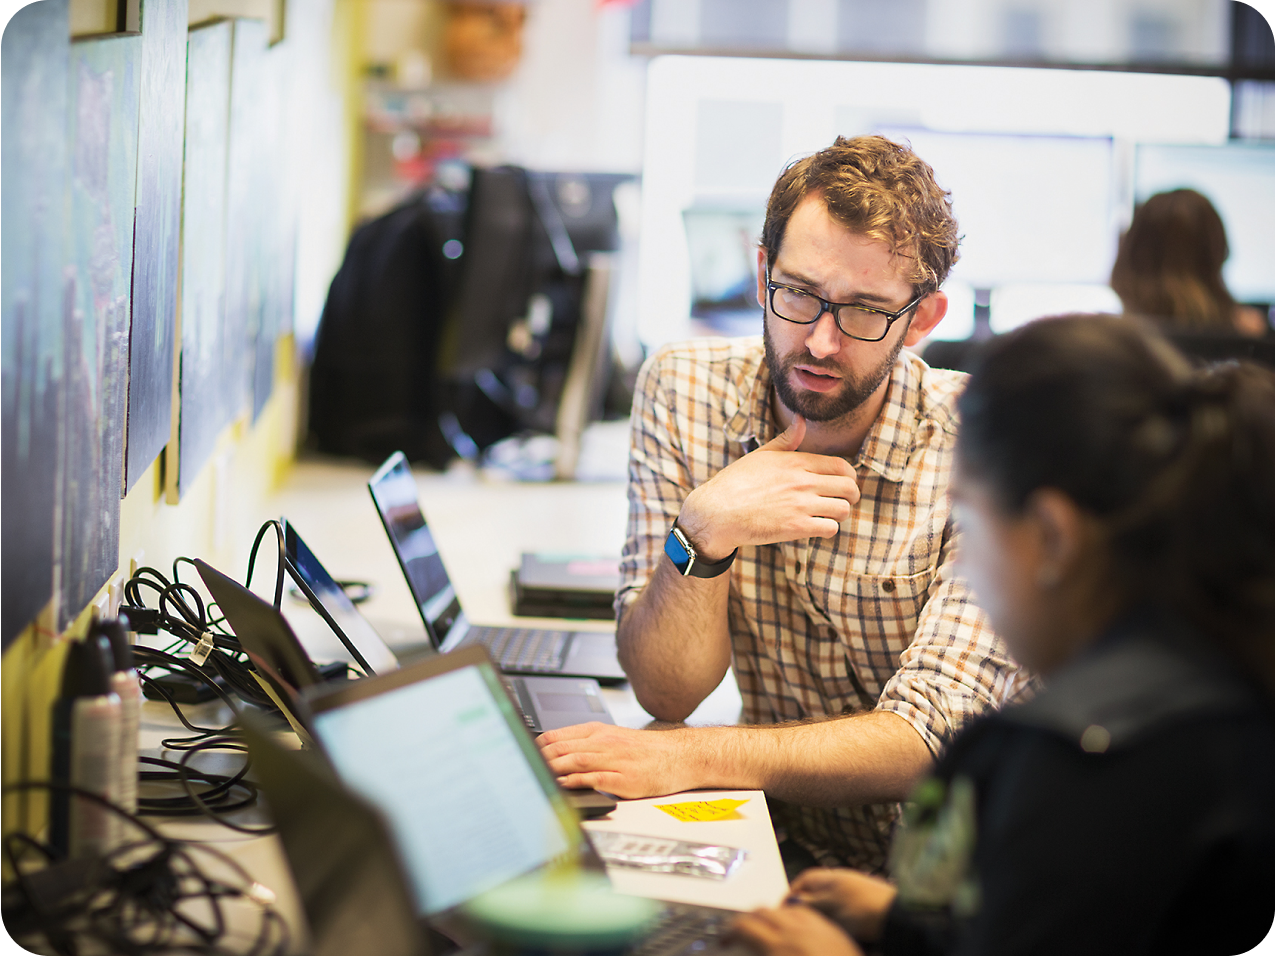 Un hombre con barba y gafas gesticula mientras habla con una compañera de trabajo, ambos están usando portátiles en un ajetreado entorno de oficina.